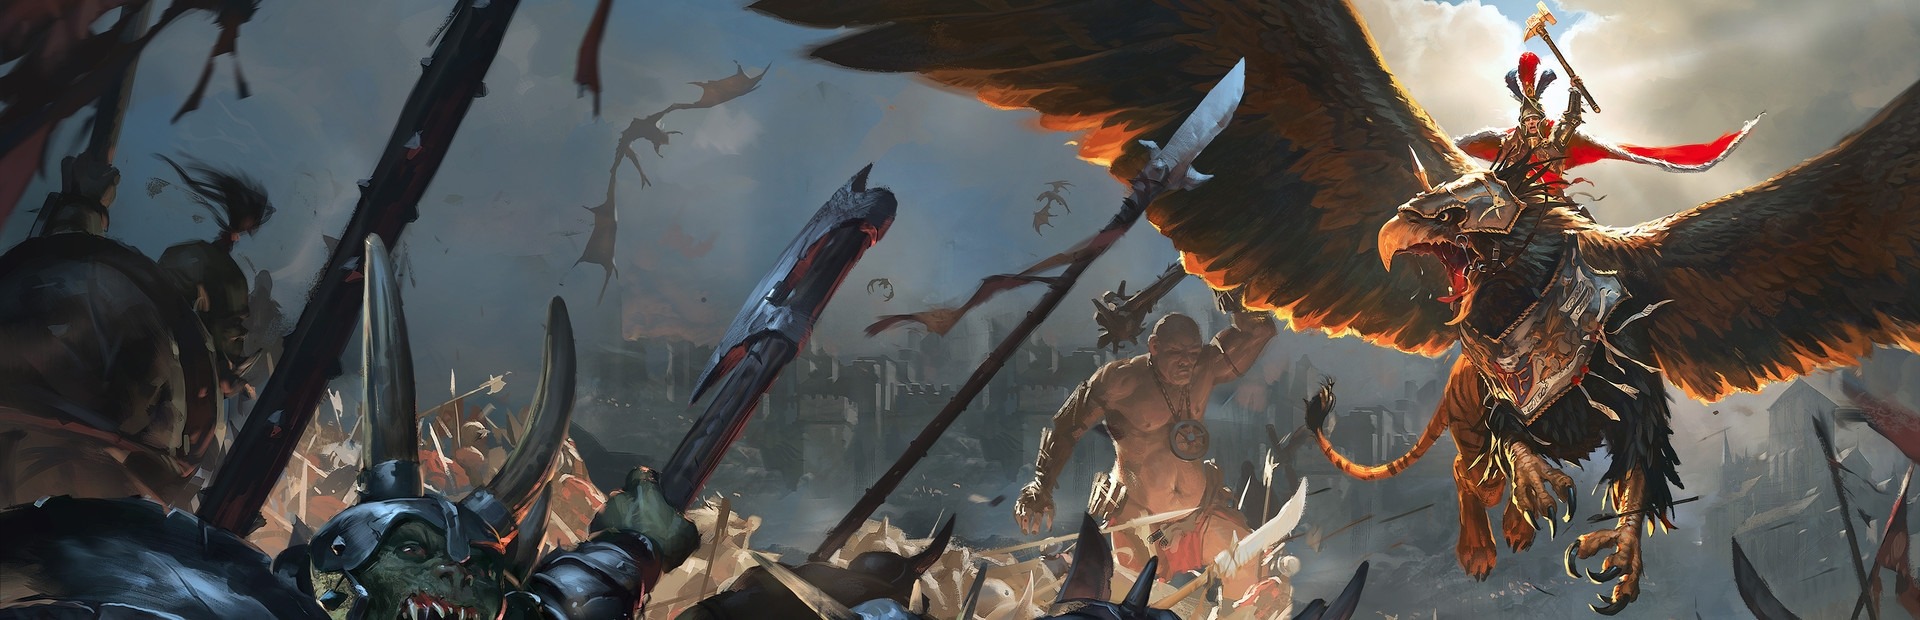 Banner Total War: Warhammer Chaos Warriors